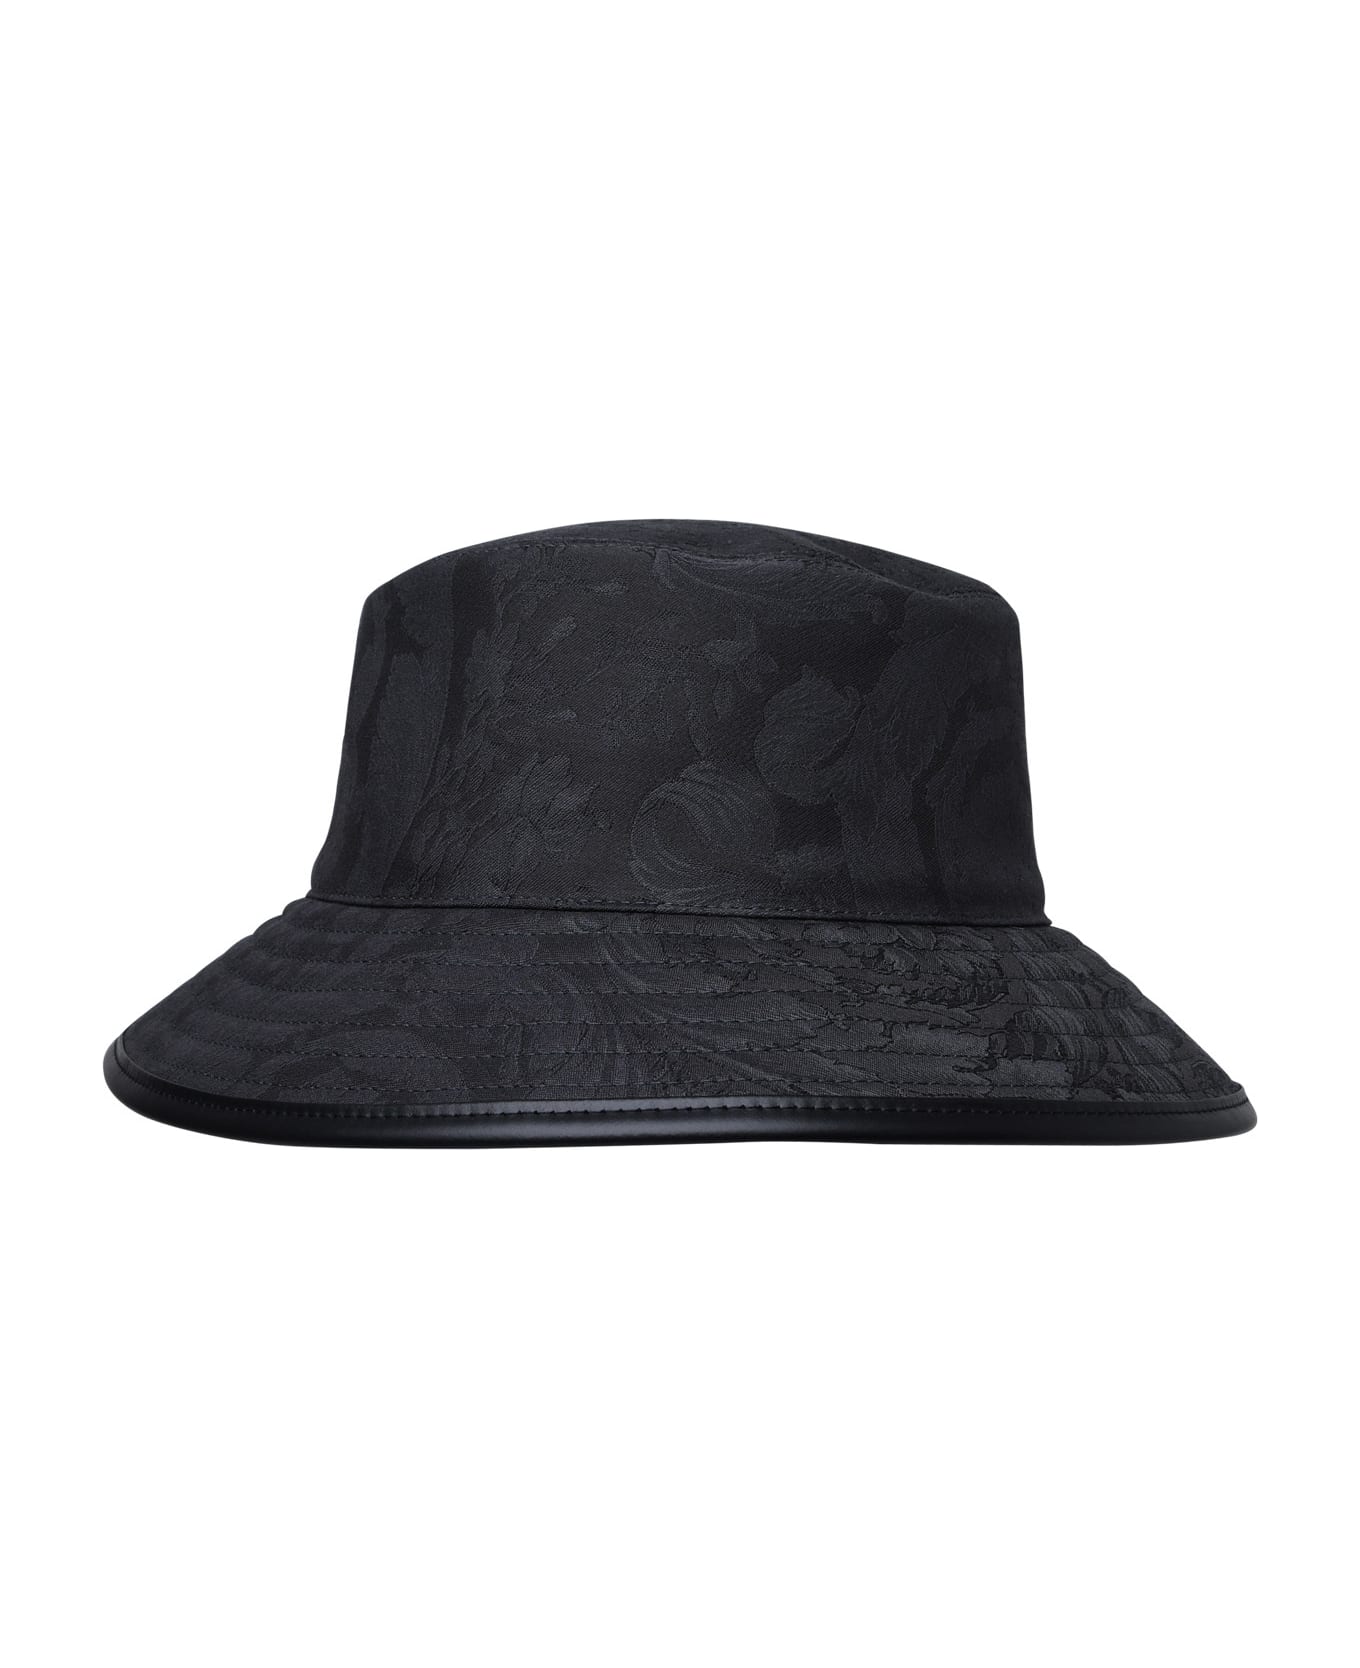 Versace Black Cotton Hat - Black